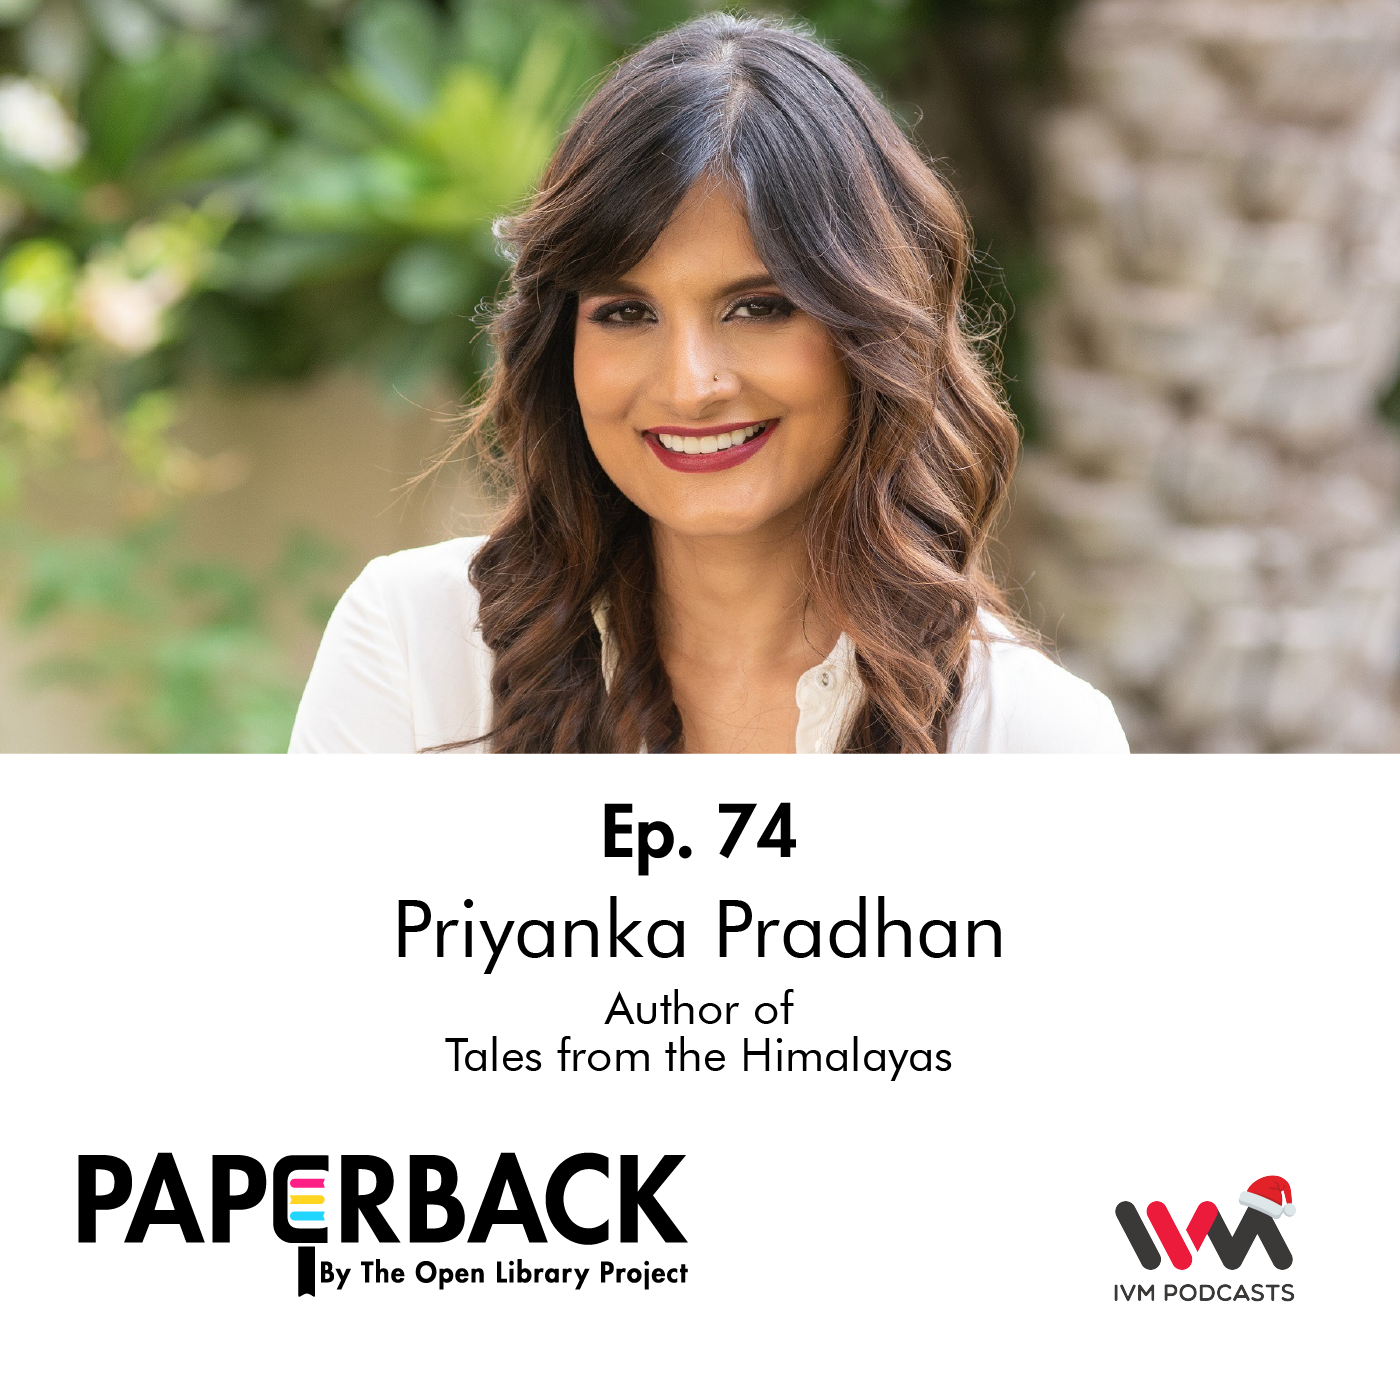 Ep. 74: Priyanka Pradhan